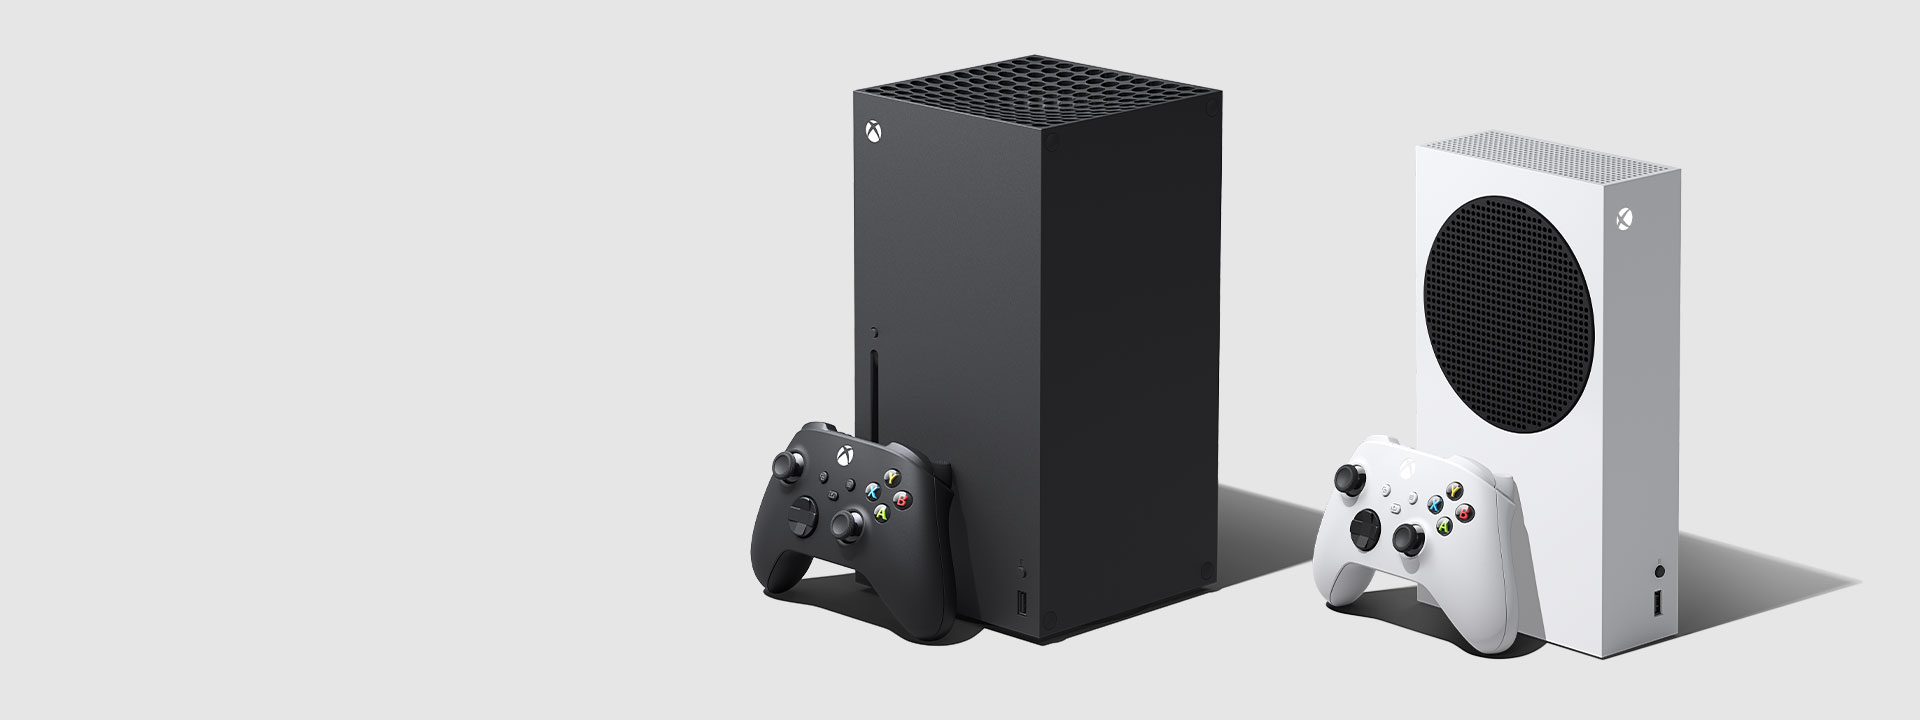  Xbox Series X con controller nero per Xbox e Xbox Series S con controller bianco per Xbox in posizione verticale